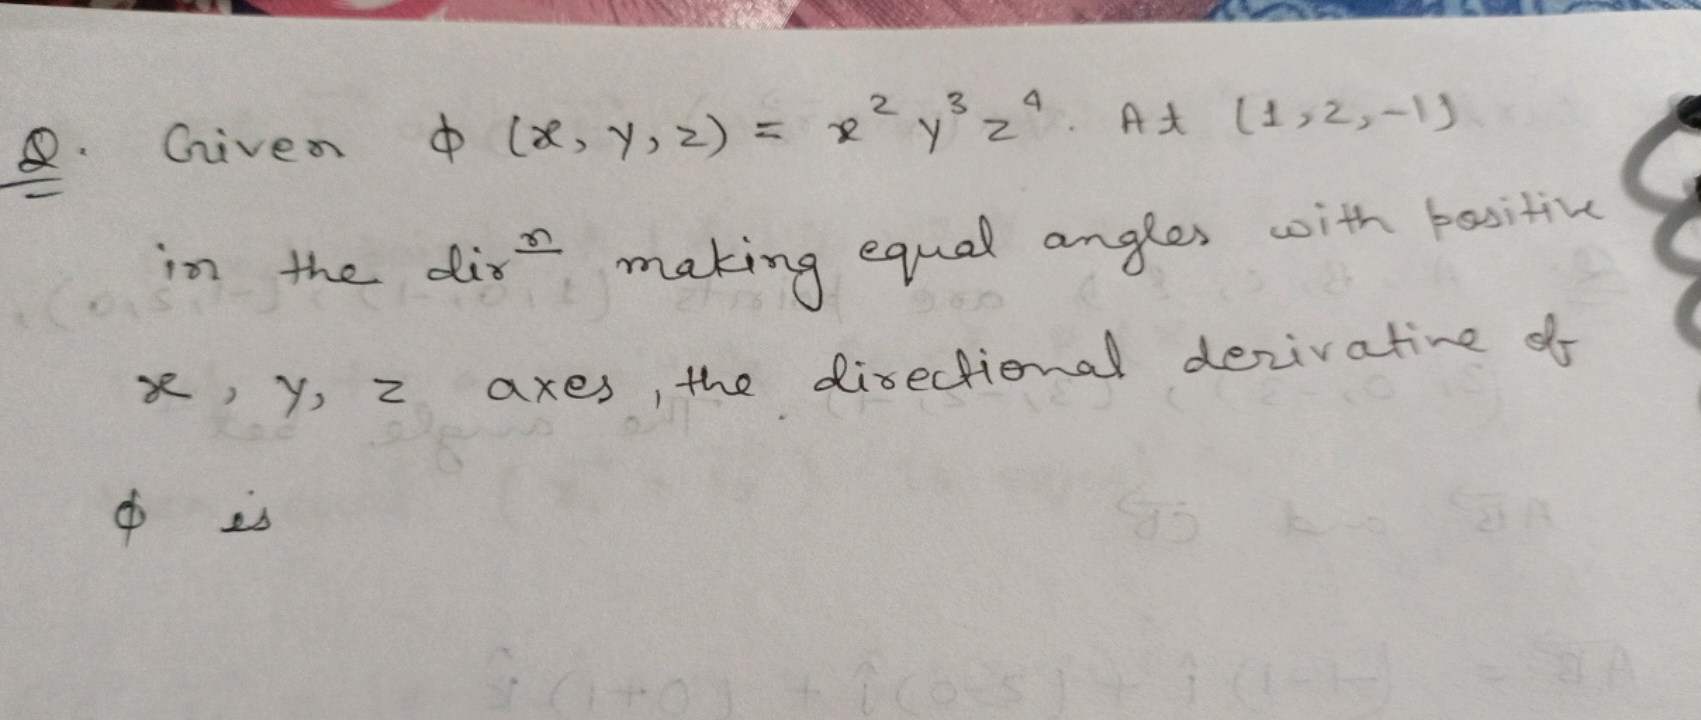 Q. Given ϕ(x,y,z)=x2y3z4. At (1,2,−1) in the dir making equal angles w